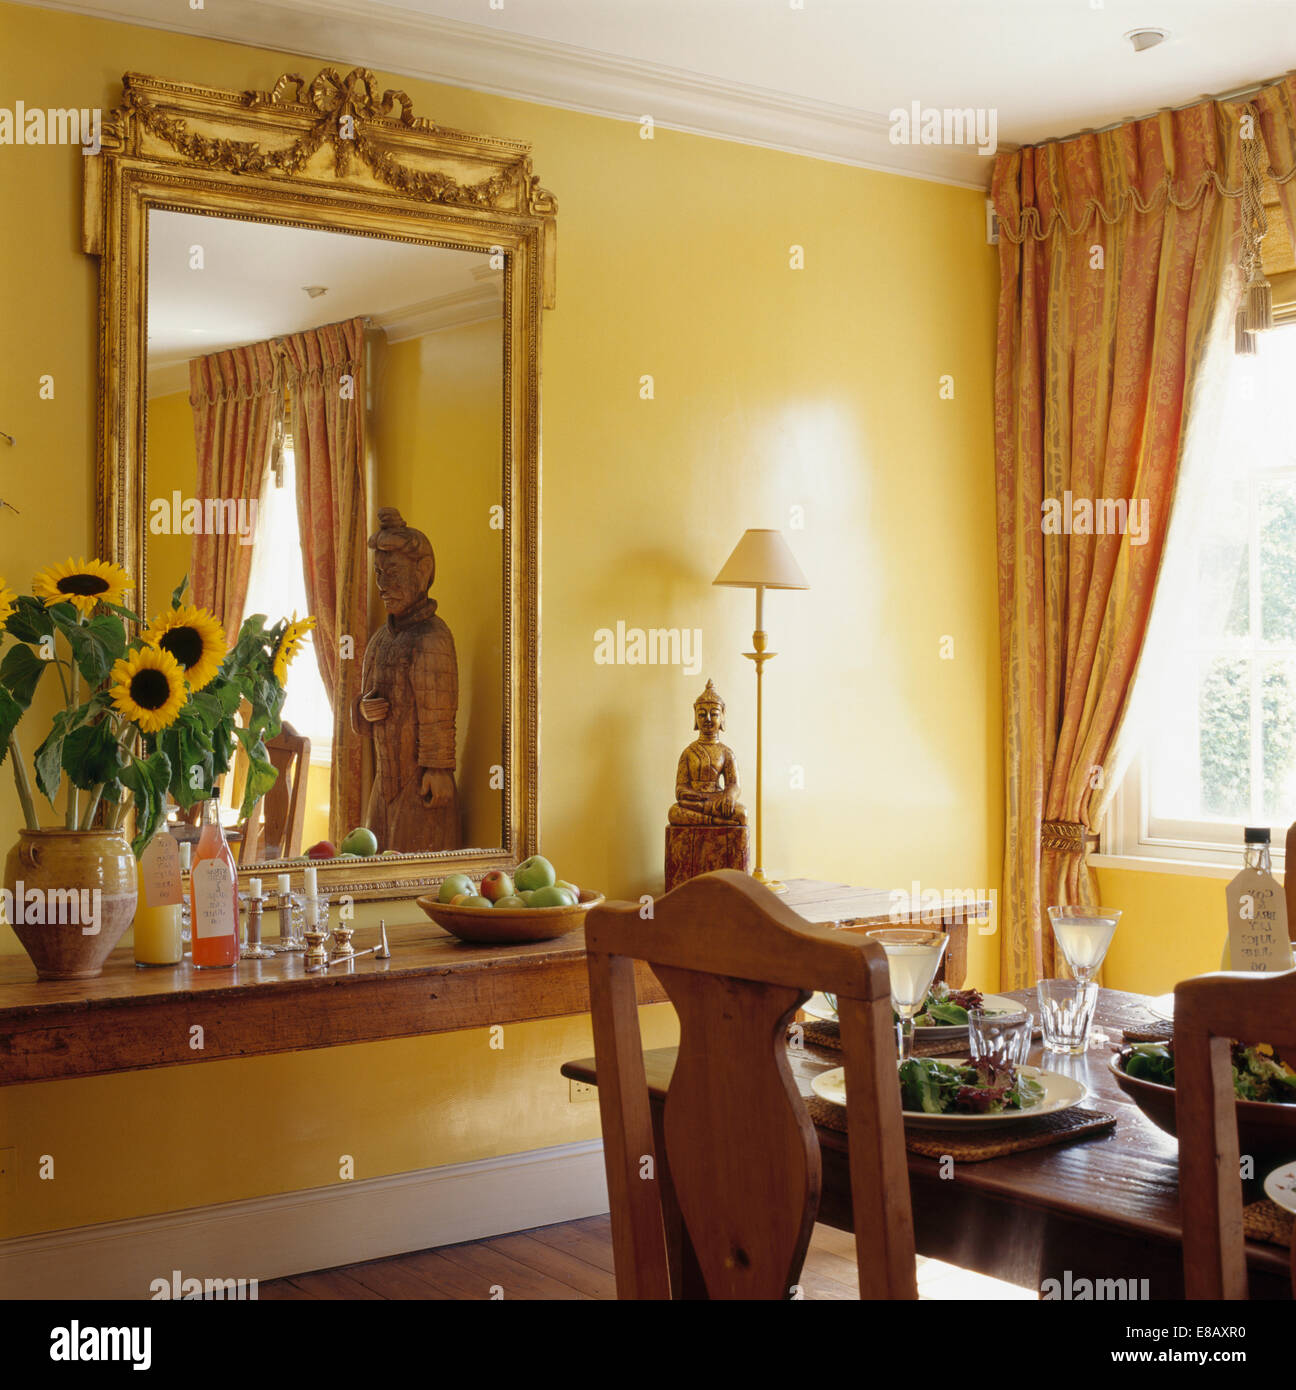 Espejo con marco dorado - El mueble clásico italiano